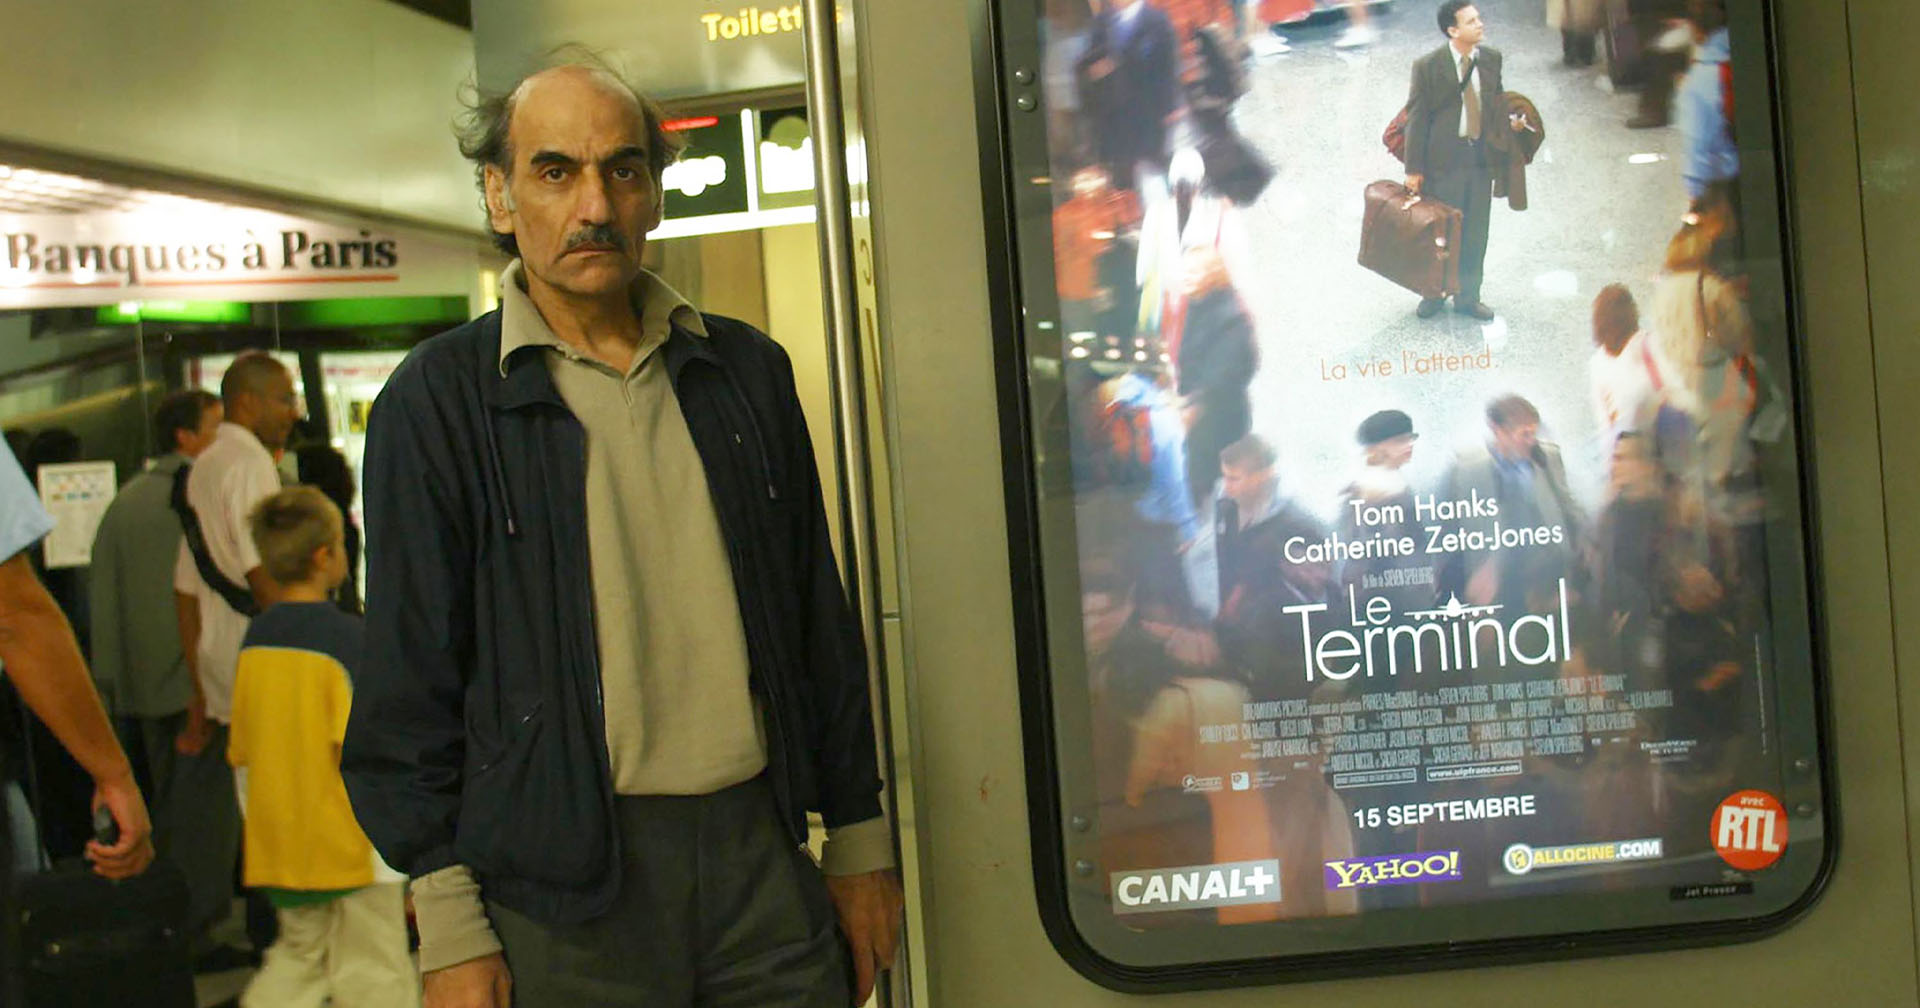 ชาวอิหร่านผู้เป็นแรงบันดาลใจของภาพยนตร์ The Terminal (2004) เสียชีวิตแล้วที่ท่าอากาศยานกรุงปารีส